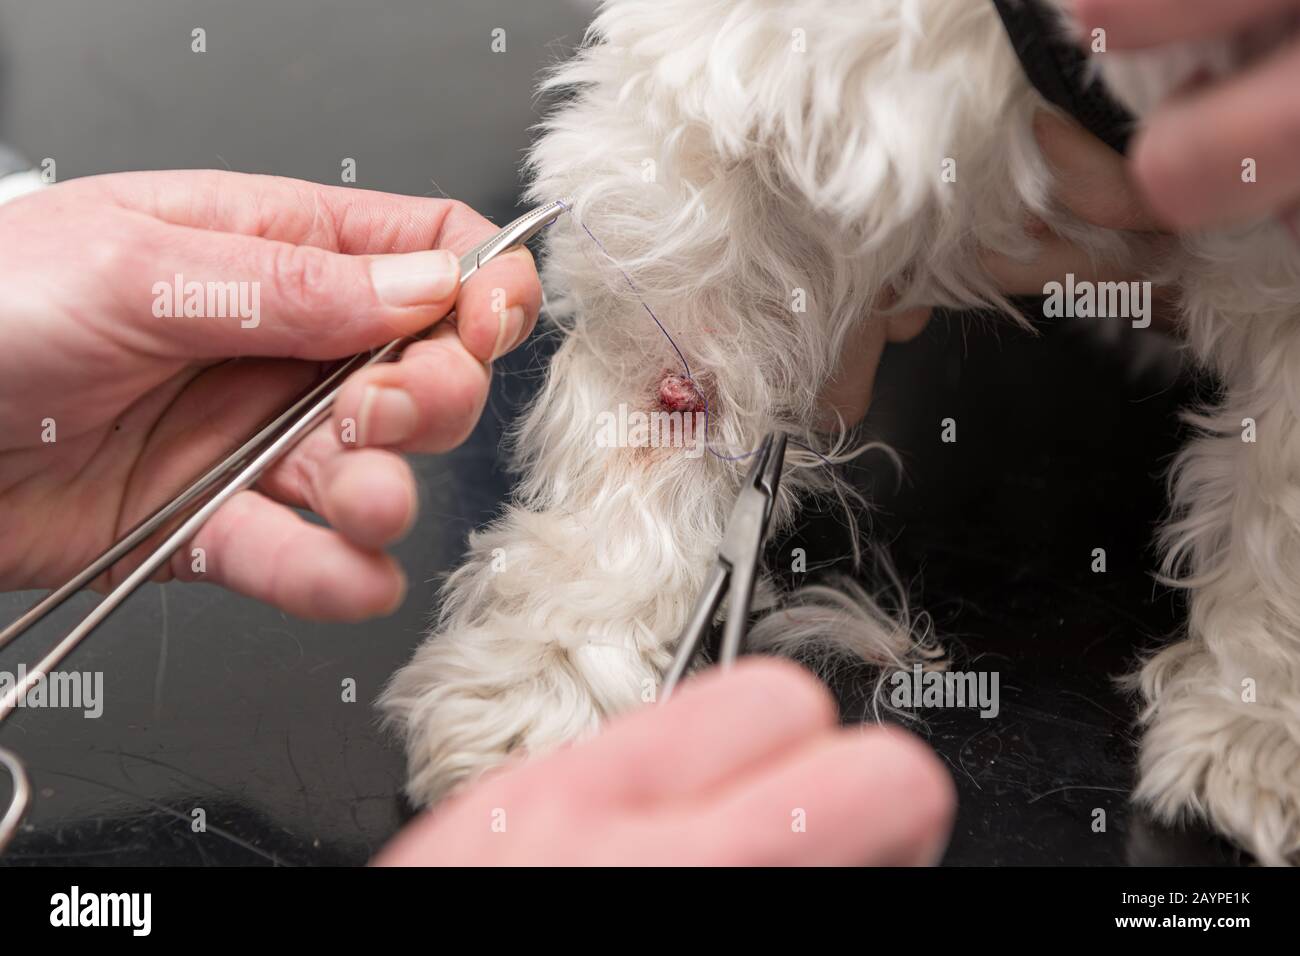 Kleines Tier am Tierarzt. Der Tierarzt bindet mit einem Faden eine Warze an  einem Hund ab Stockfotografie - Alamy